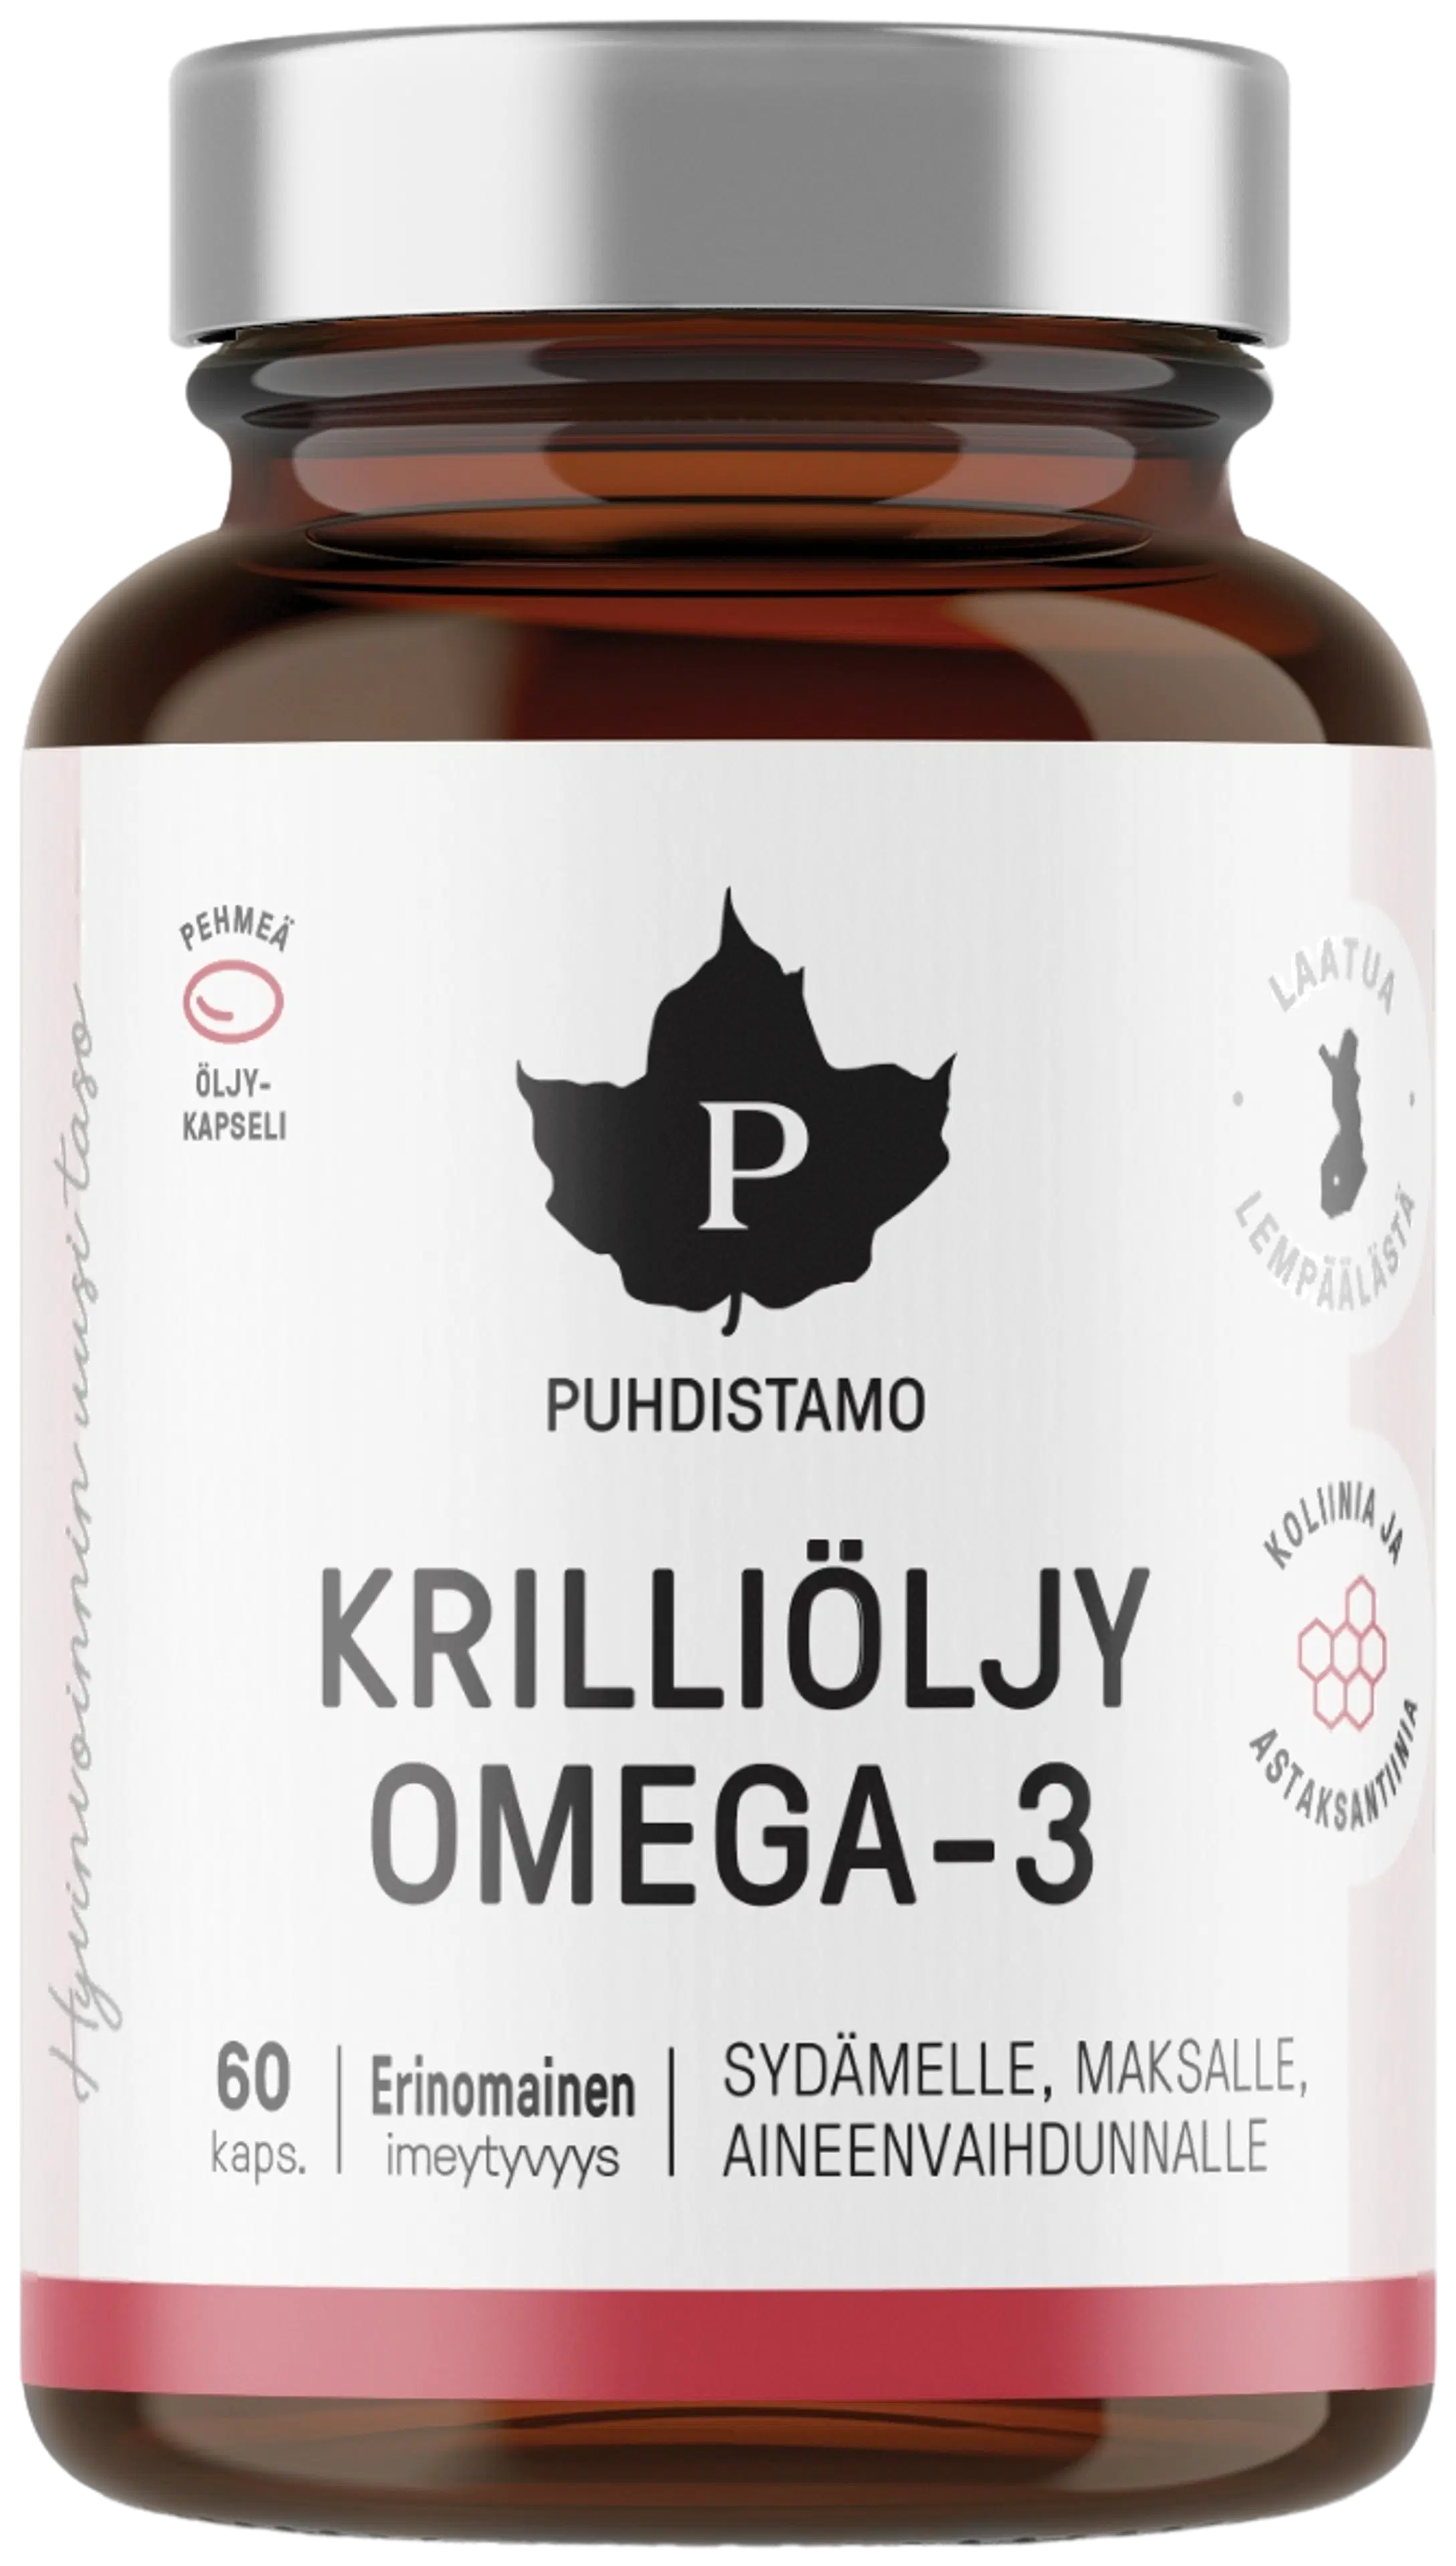 Puhdistamo Krilliöljy Omega-3 60 kapselia